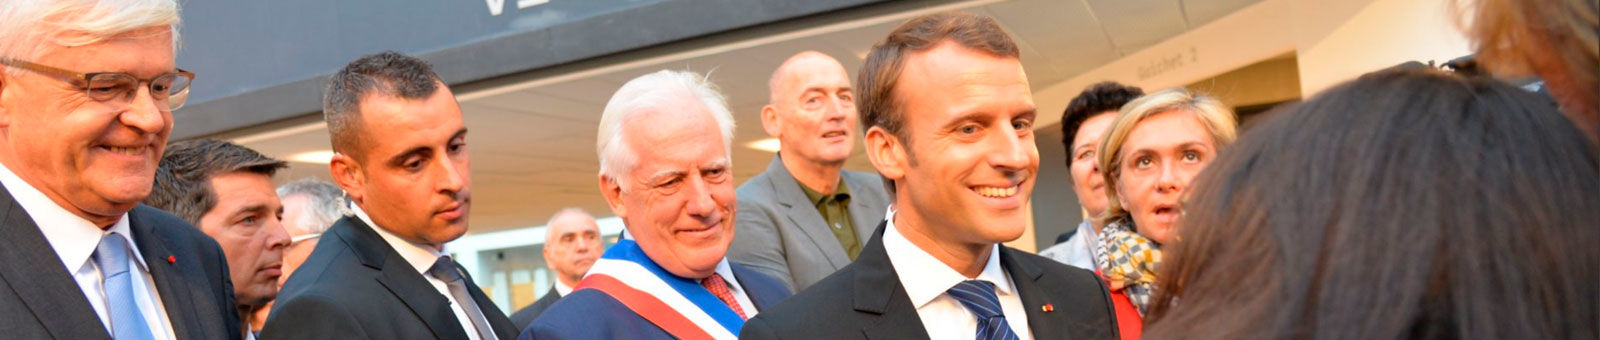 Emmanuel Macron, Président de la République accueilli par Michel Bournat, maire de Gif-sur-Yvette